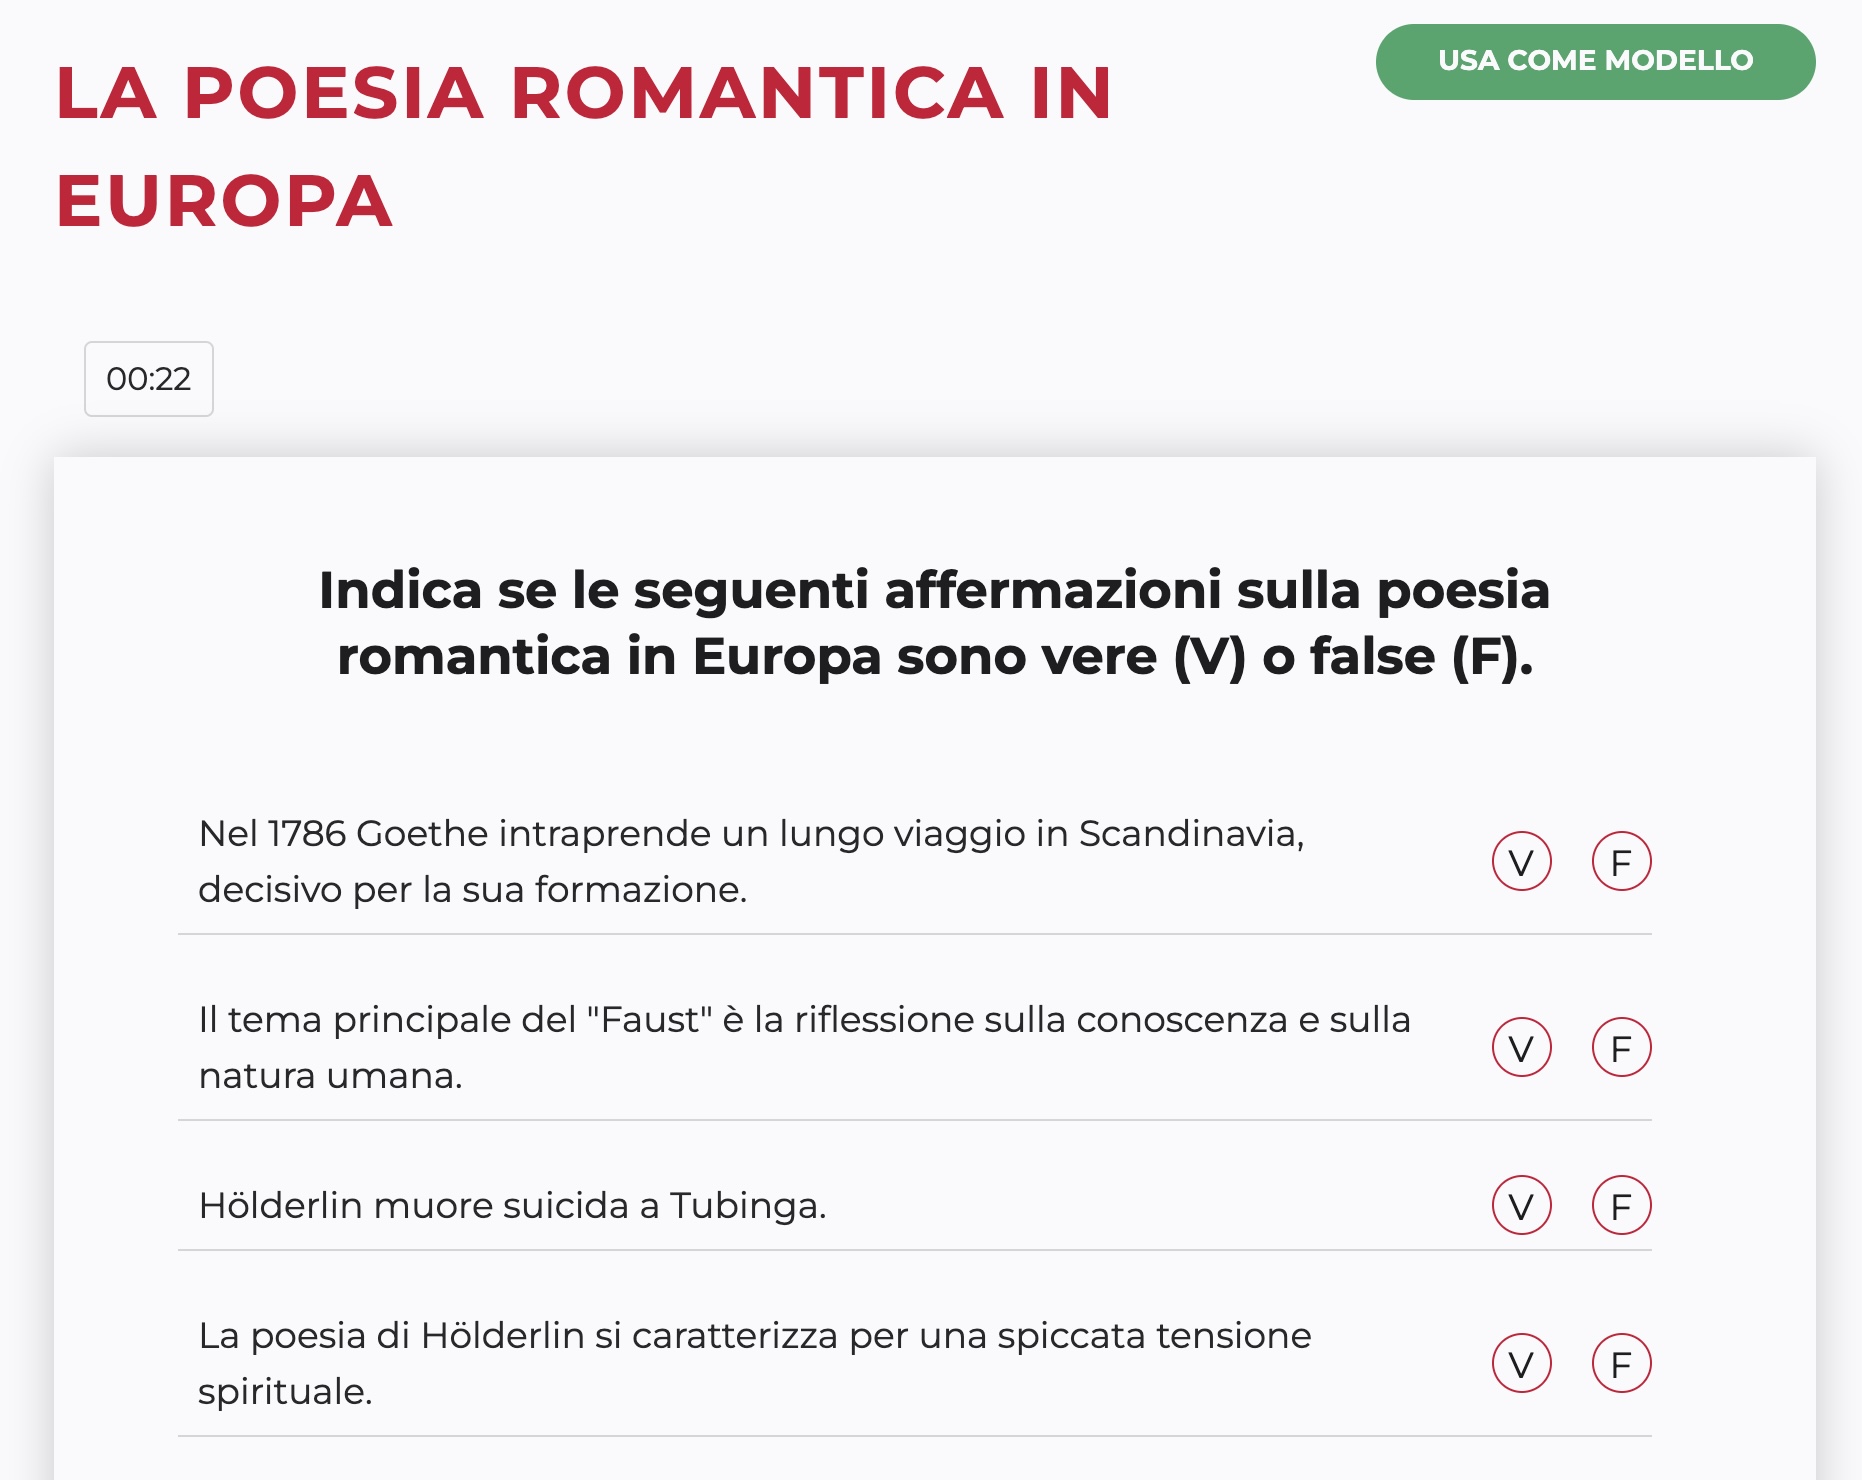 La poesia romantica in Europa